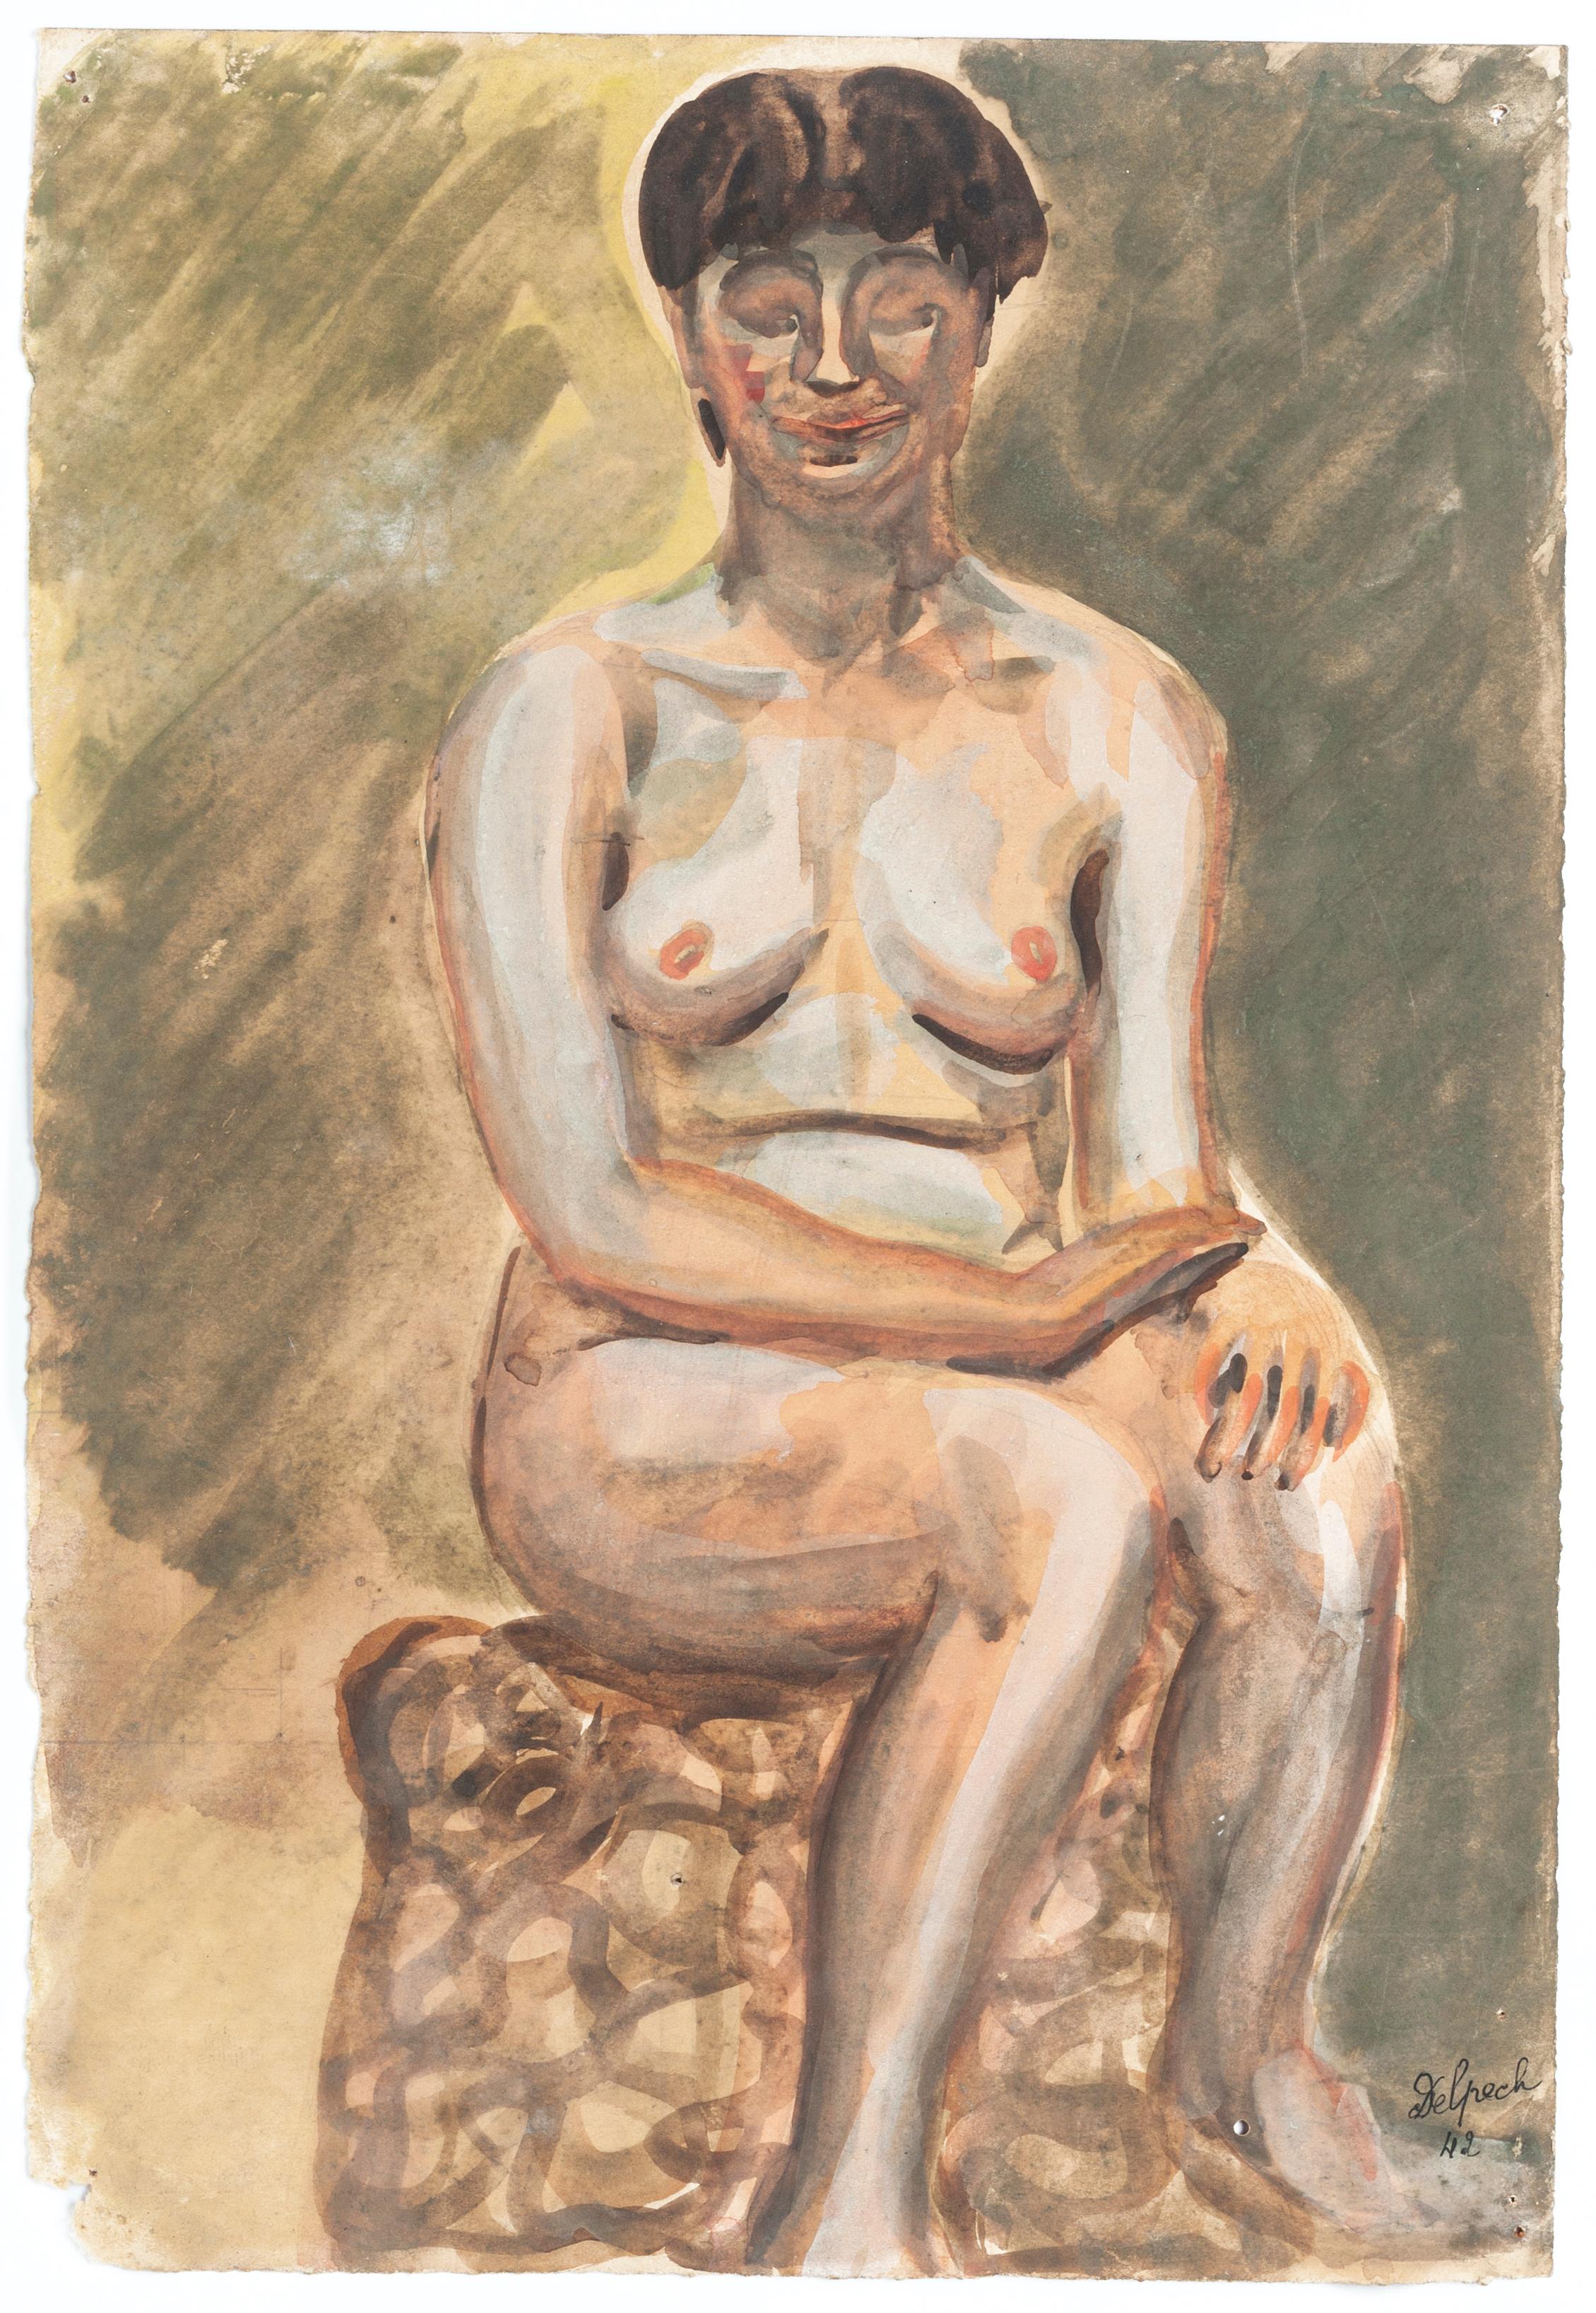 Nude - Mixed Media on Paper by J.-R. Delpech - 1942 - Art by Jean Delpech